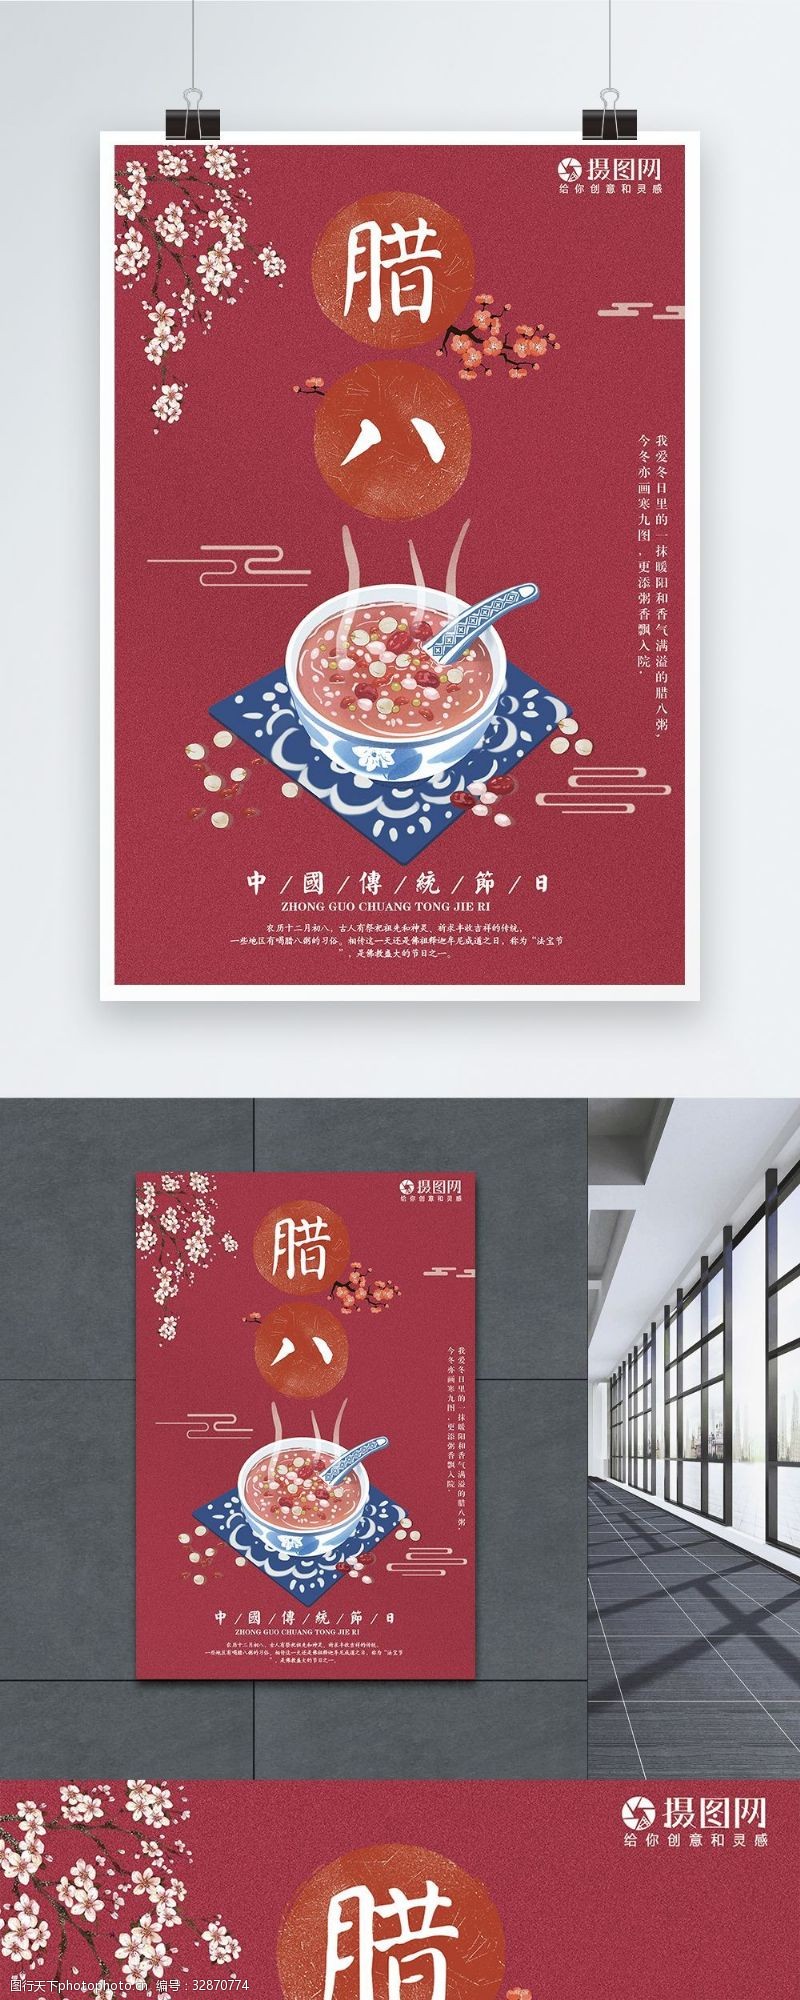 过了腊八中国传统节日腊八节海报